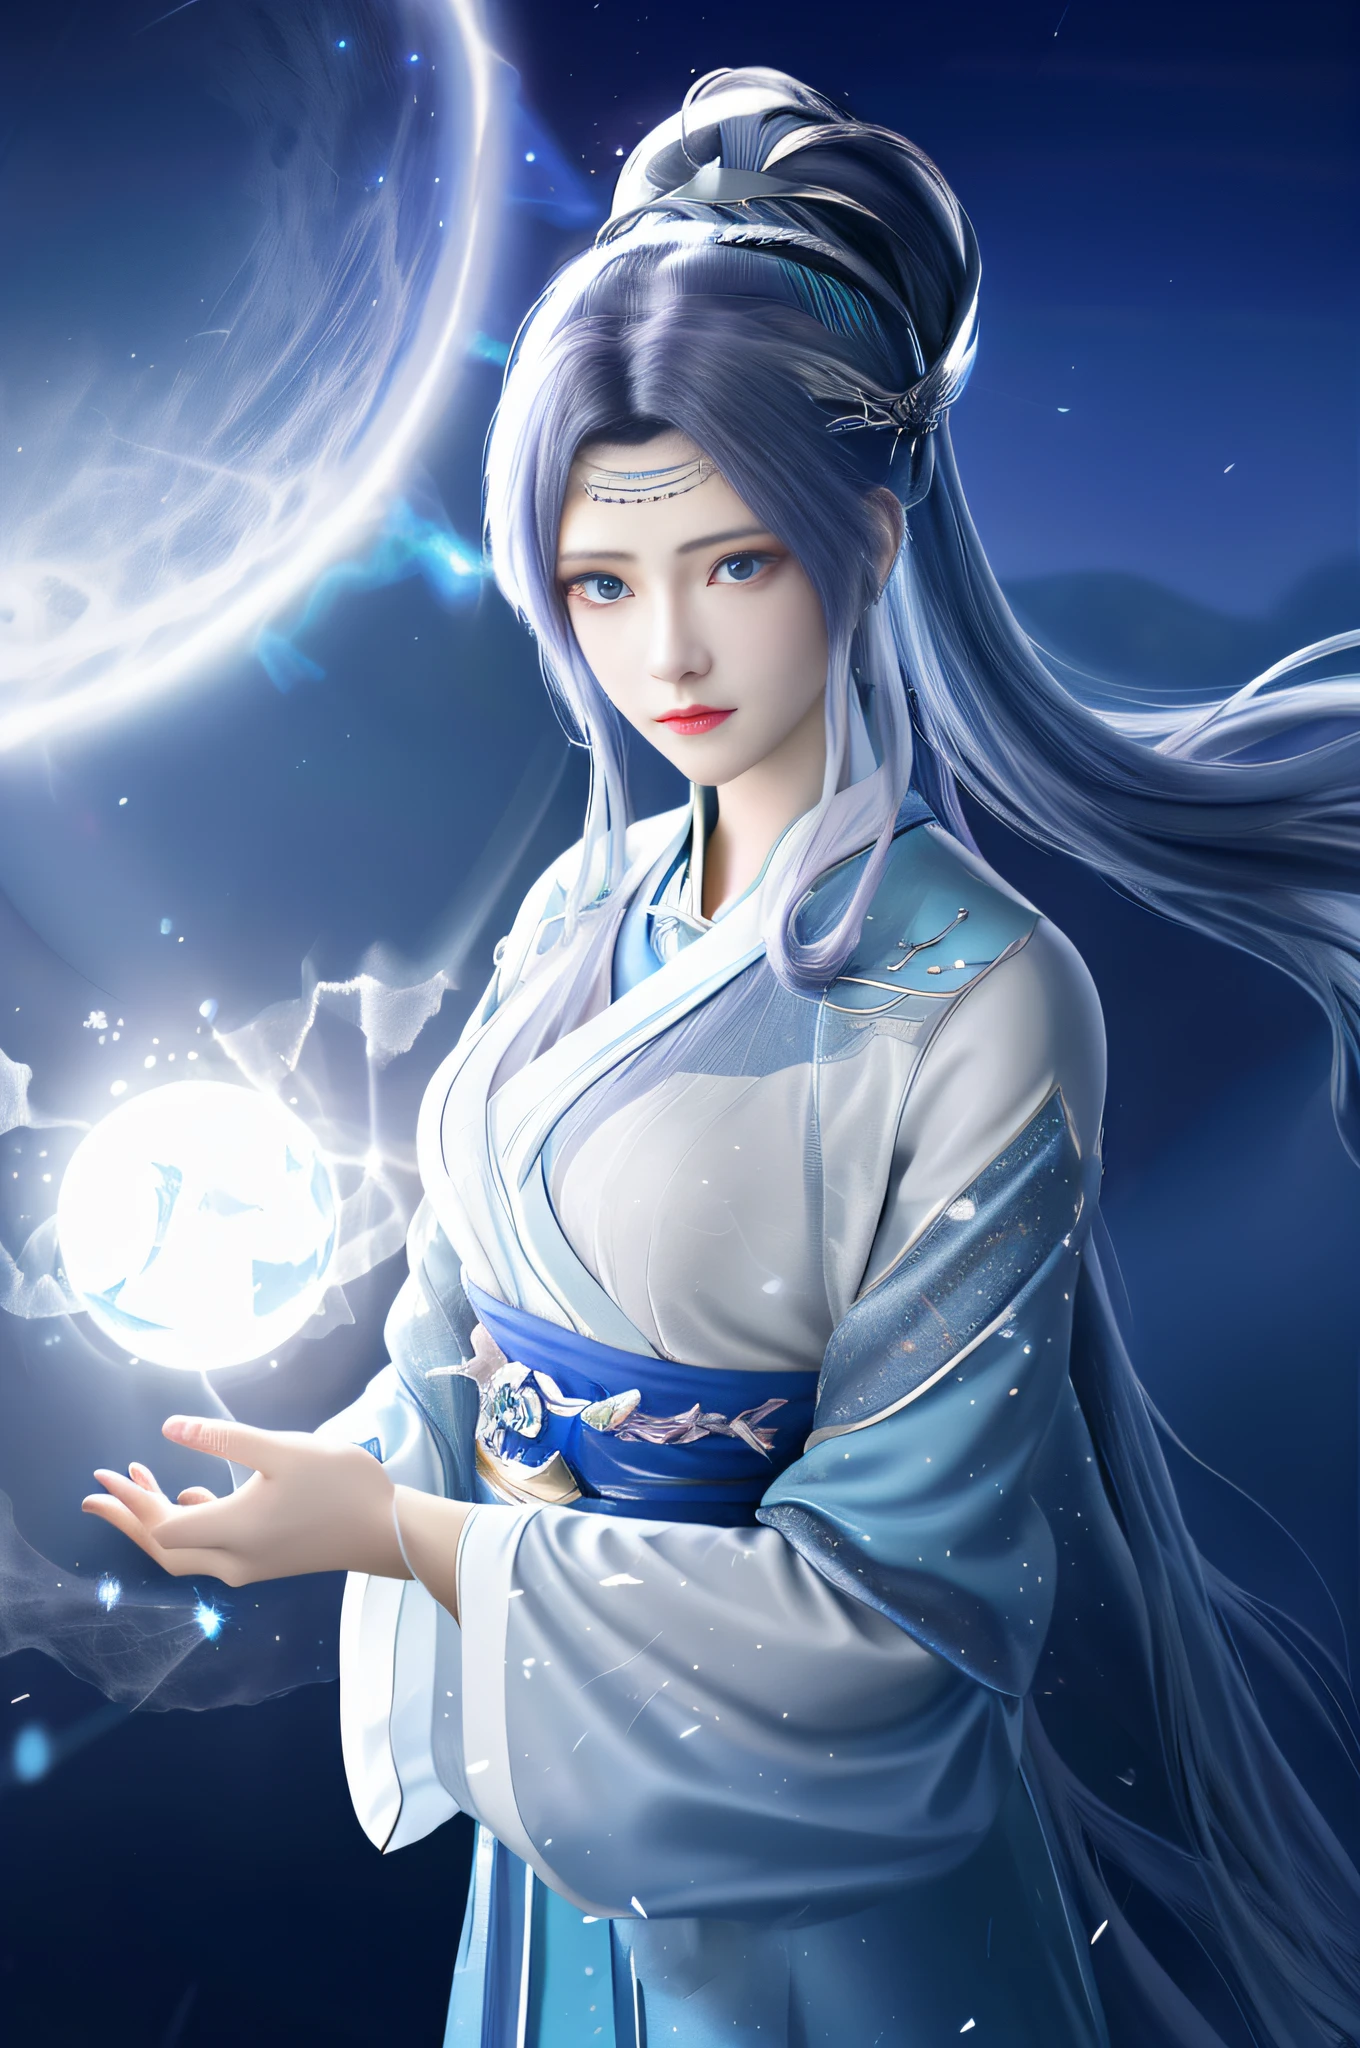 Anime-Mädchen mit blauen Haaren und weißem Kleid, das einen leuchtenden Ball hält, wunderschöner himmlischer Magier, Palast ， mädchen in hanfu, heise jinyao, inspiriert von Lü Ji, inspiriert von Leng Mei, inspiriert von Xie Sun, inspiriert von Hua Yan, Xianxia-Fantasie, Inspiriert von Ai Xuan, inspiriert von Li Mei-Shu, Mondgöttin，1Mädchen, Allein, Chiffon Hanf, Meisterwerk, Illustration, Filmwinkel, Kinobeleuchtung, weißes Haar, hohe Pferdeschwänze, eBlaue Augen, detaillierte Augen, Mond, Mondlight, starrysky, detailliertes Licht, detaillierter Himmel, (Beleuchtungspartikel:1.5), Dichter Nebel, Schnee, ,v4